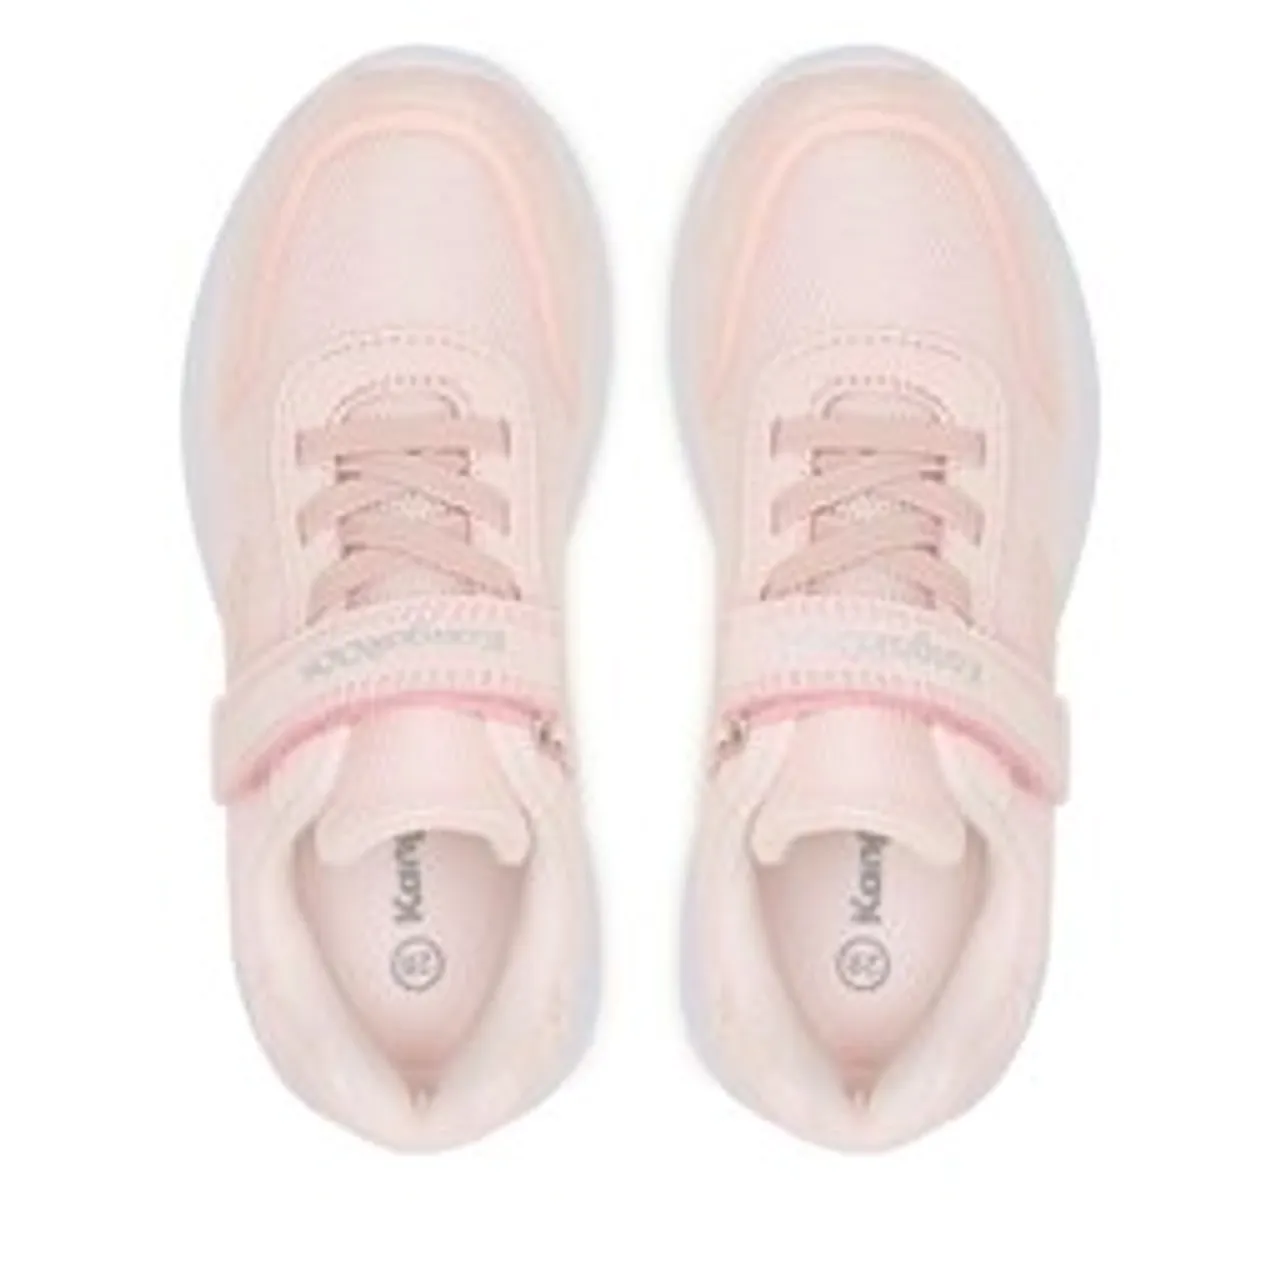 Sneakers KangaRoos Kl-Twink Ev 10010 000 6158 M Frost Pink/Silver